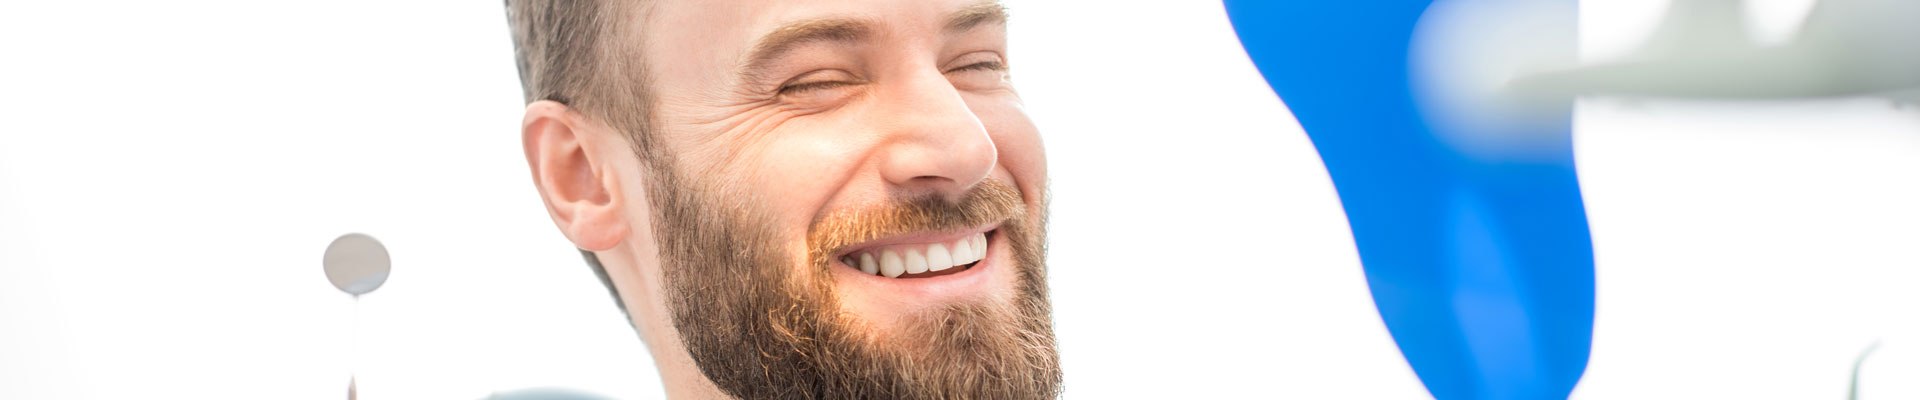 Junger Mann mit Bart zeigt ein schönes Lächeln in der Zahnarztpraxis